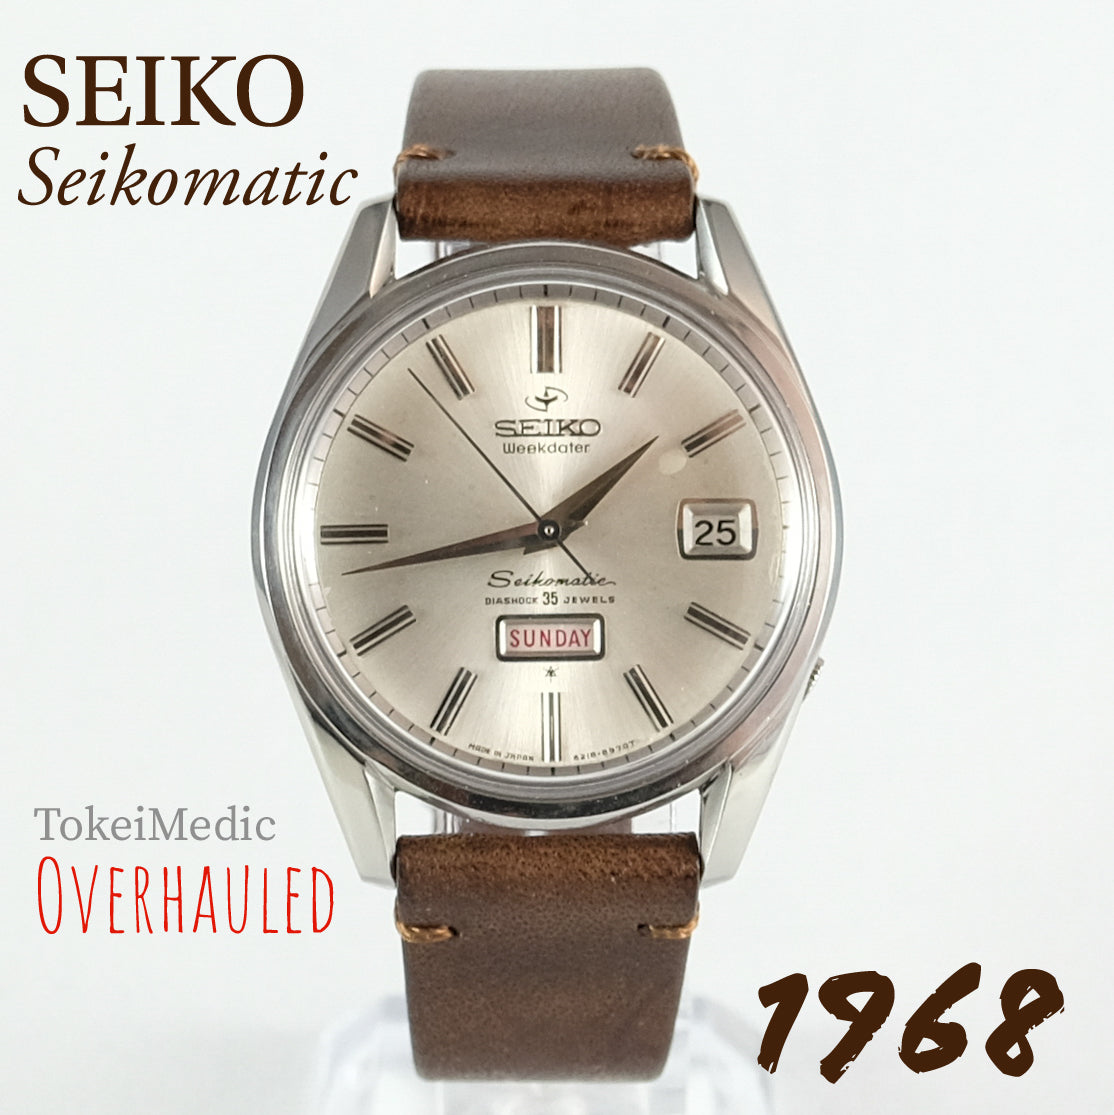 1968 Seiko Weekdater Seikomatic 6218-8970